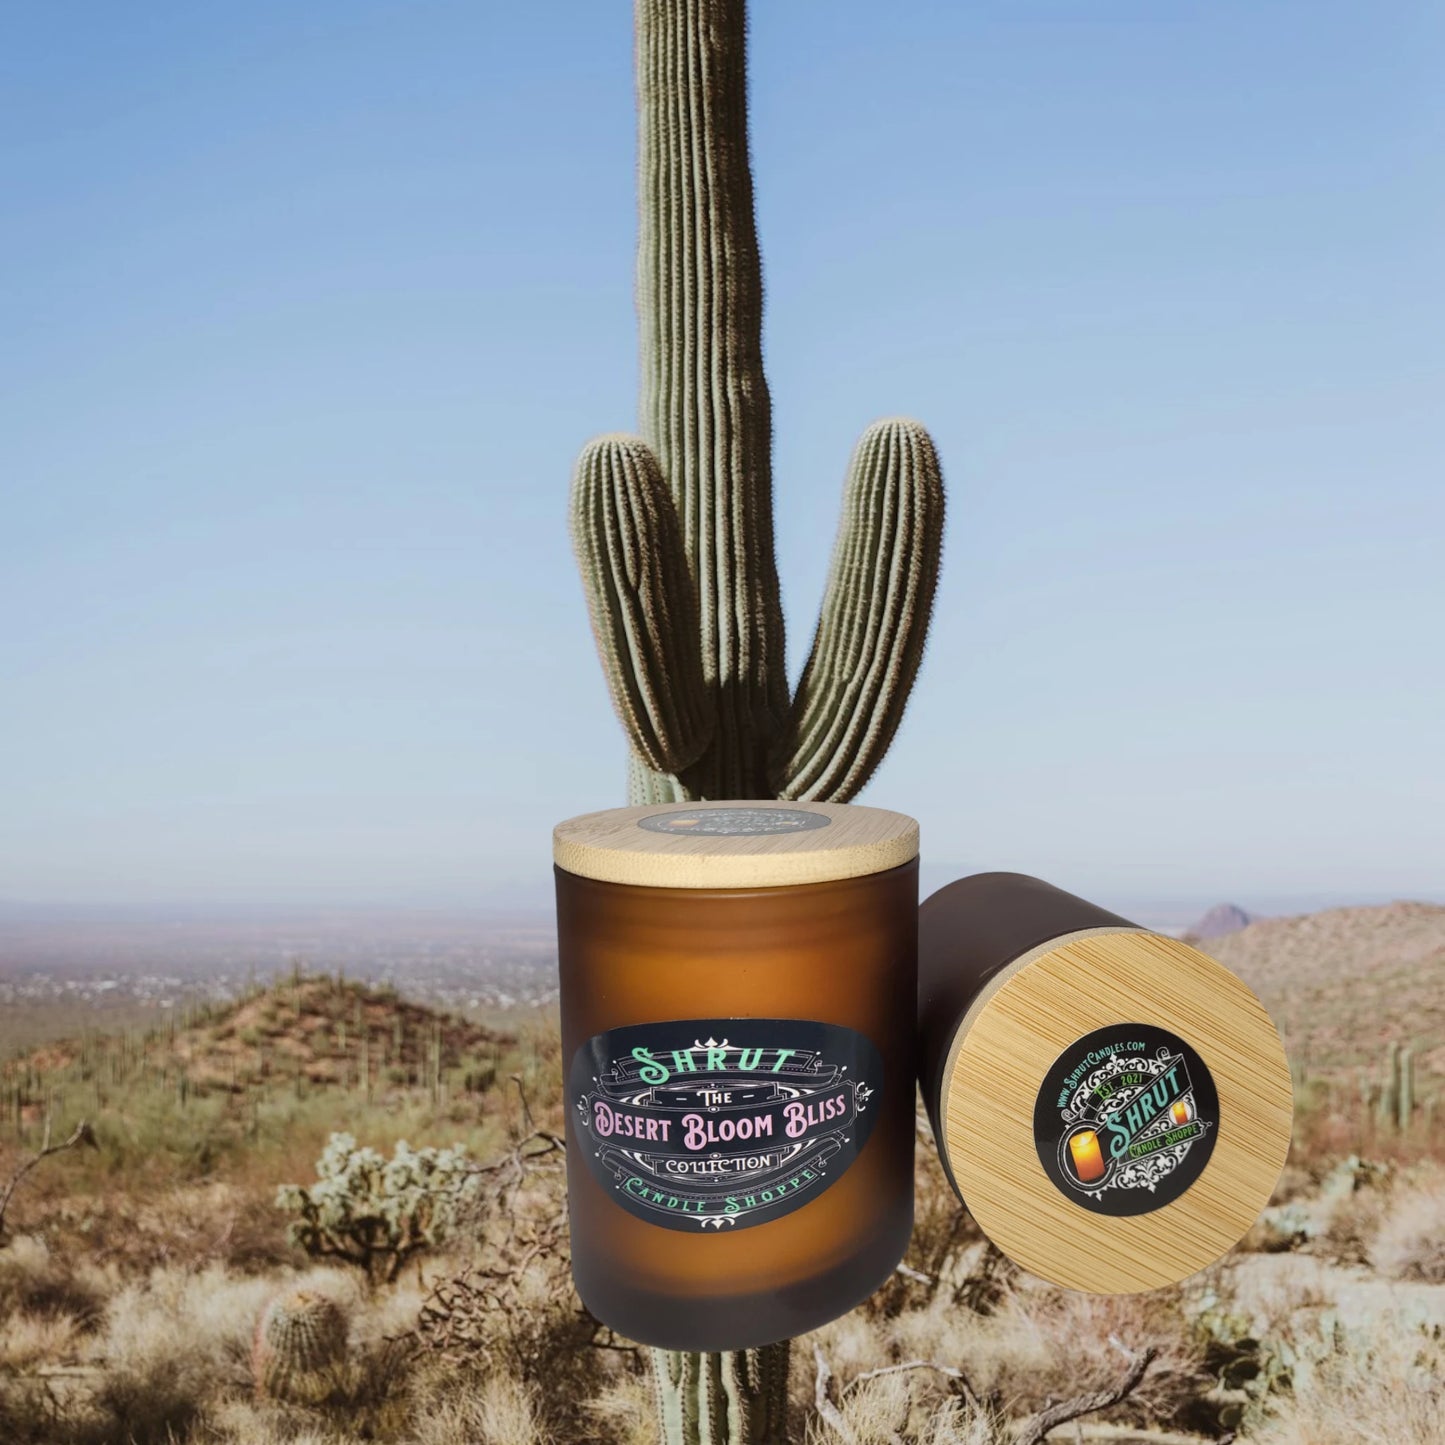 Desert Bloom Bliss: Sunlit Cactus & Vanilla Whispers